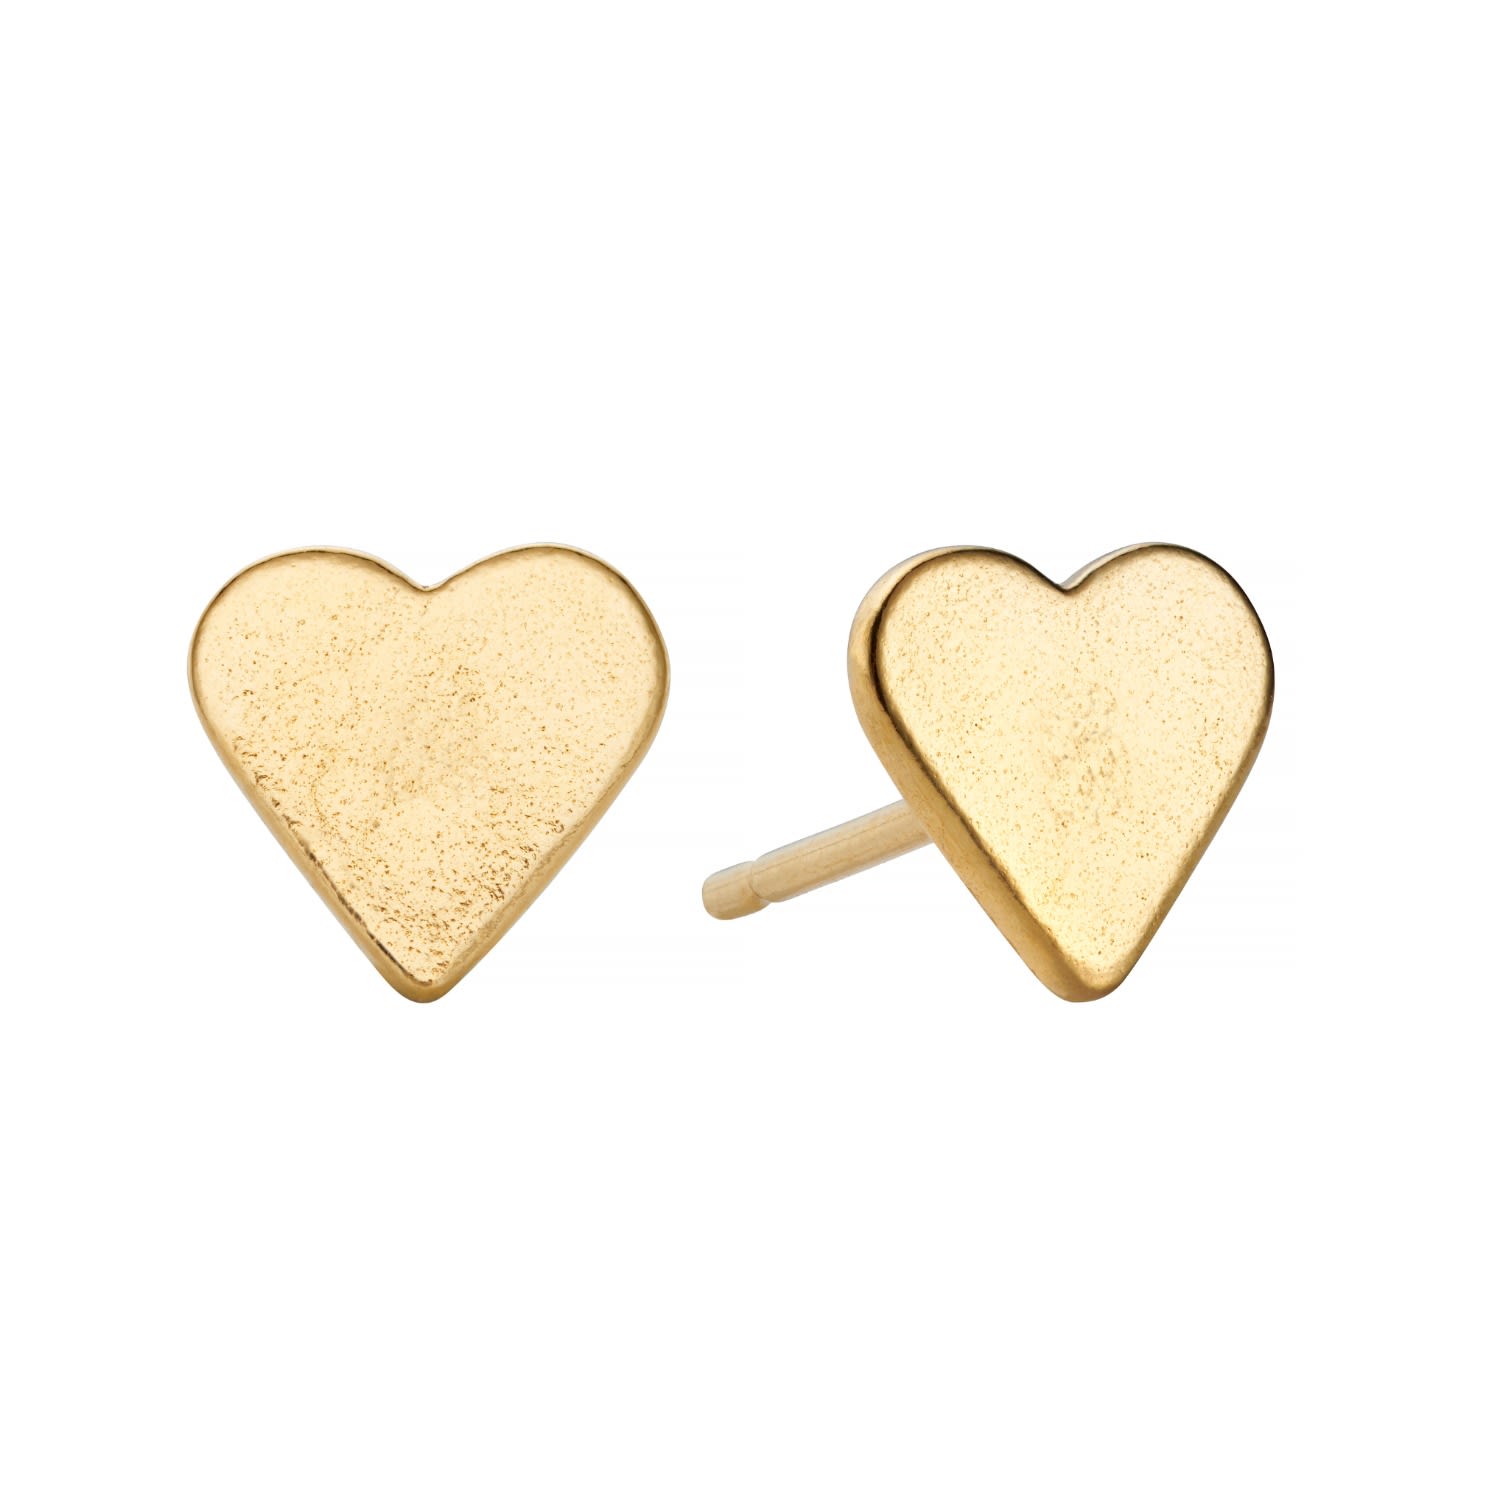 Posh Totty Designs Women's Gold Plated Mini Heart Stud Earrings